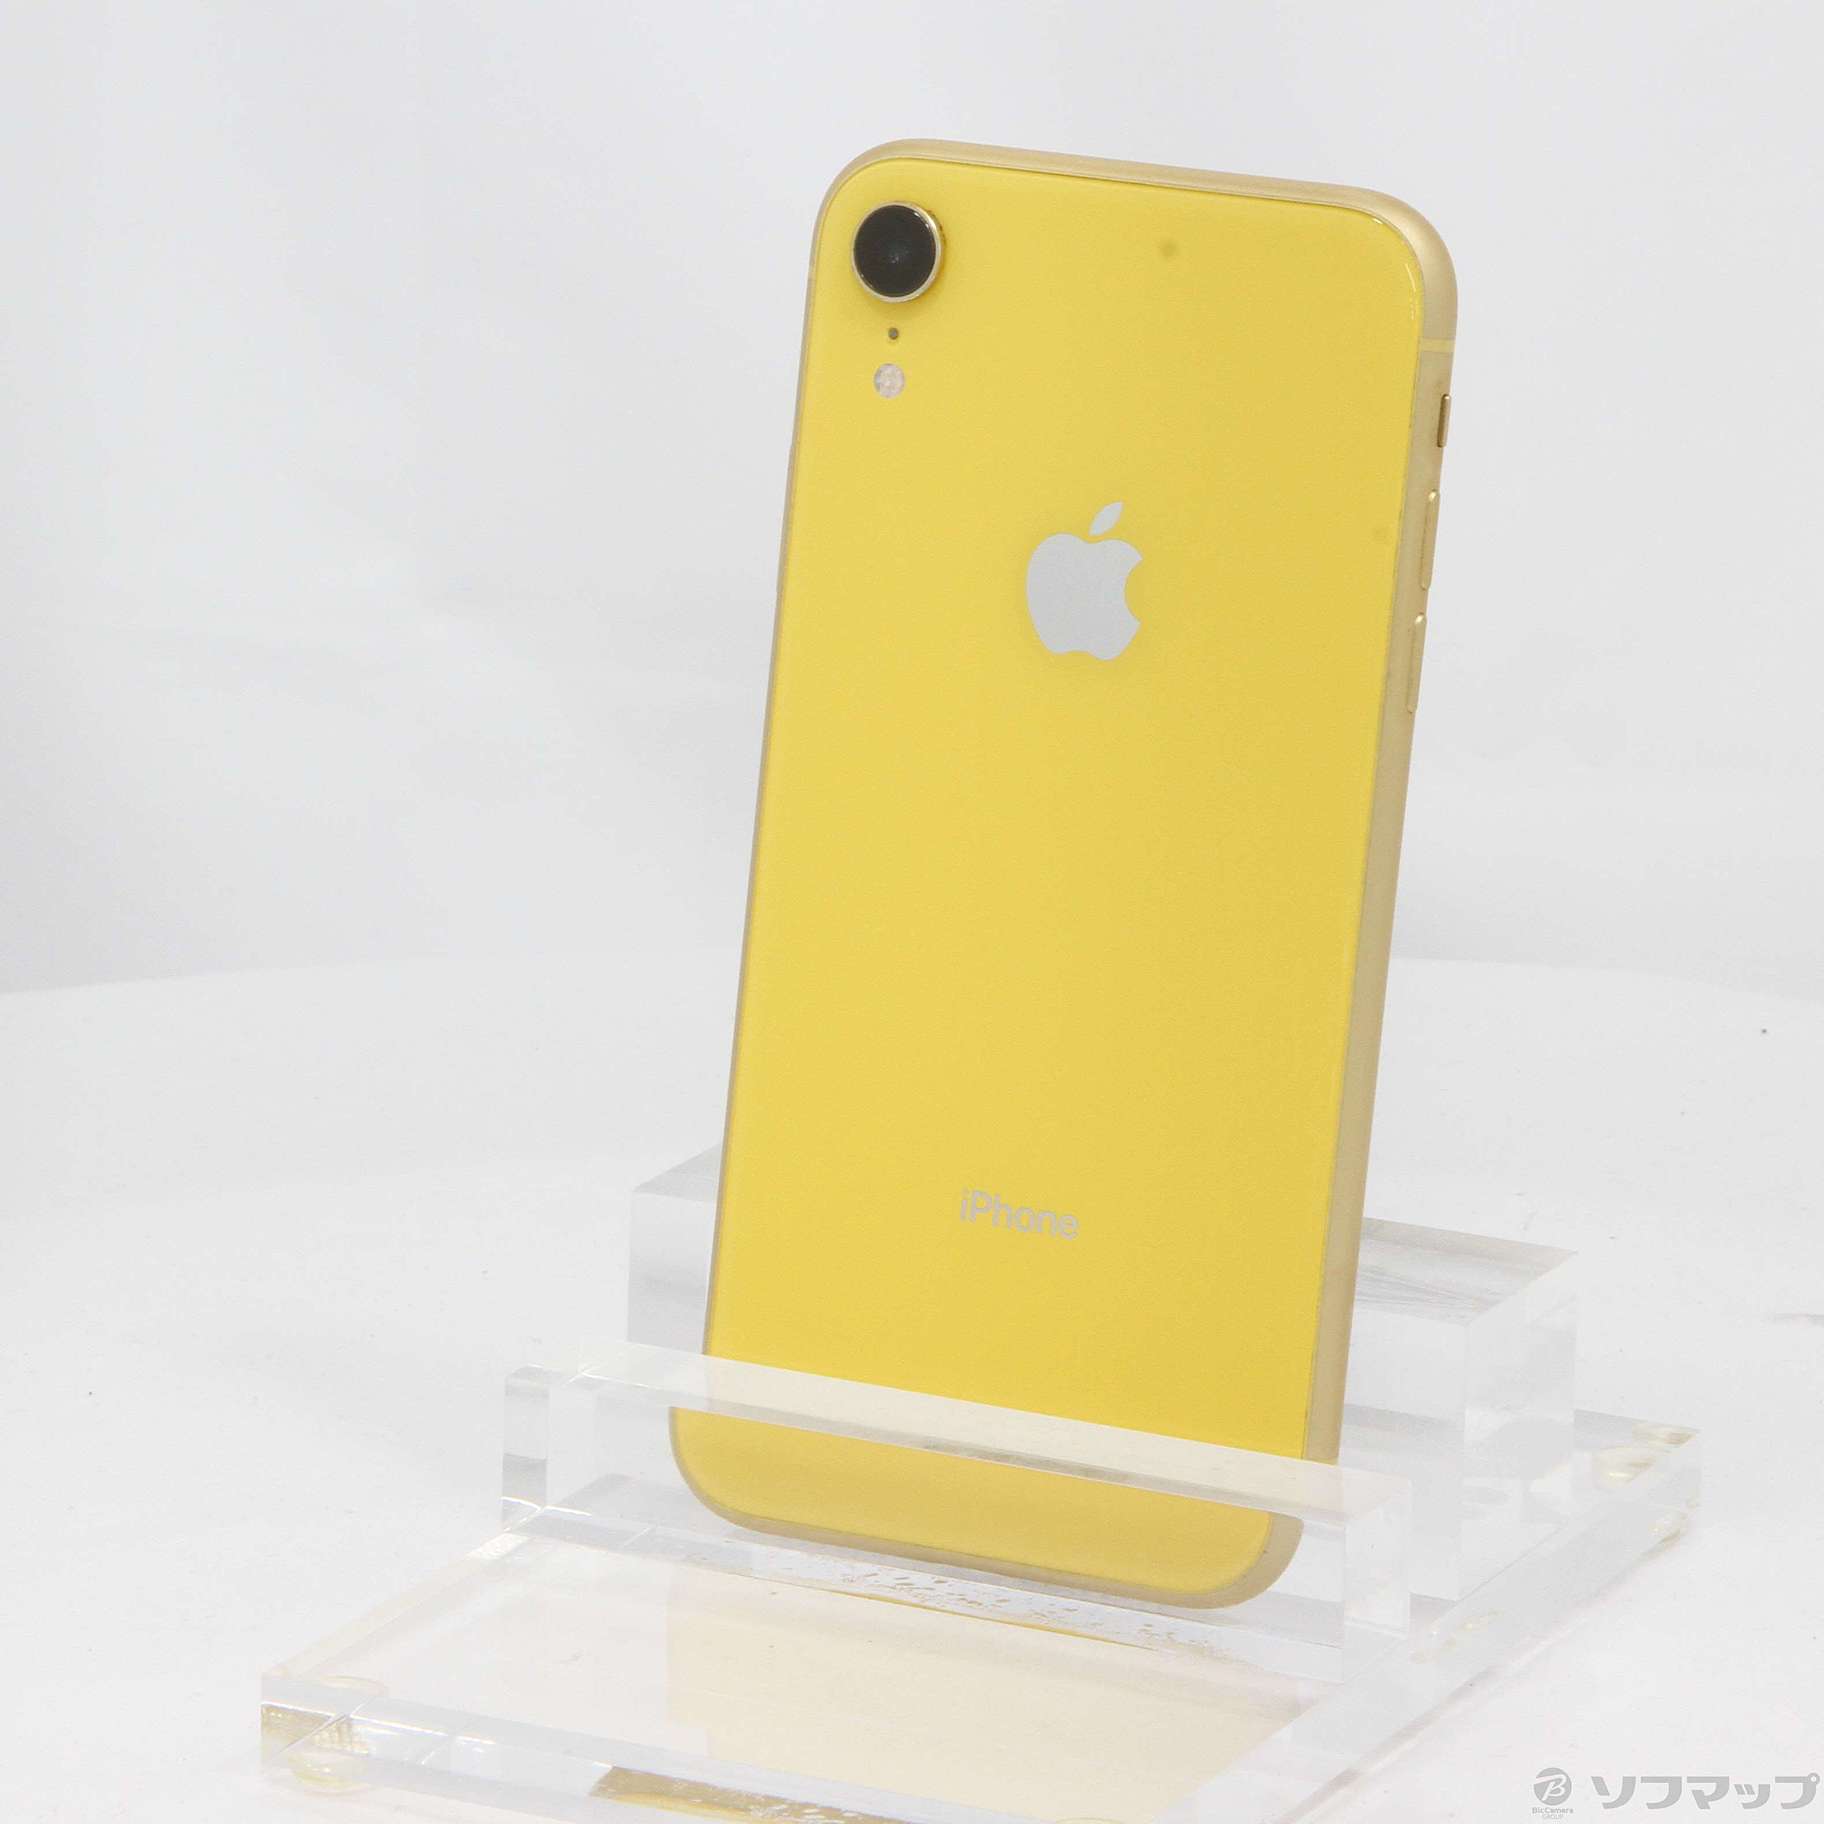 店内全品送料無料 新品 iPhone XR Yellow 128 GB SIMフリー 本体 在庫 